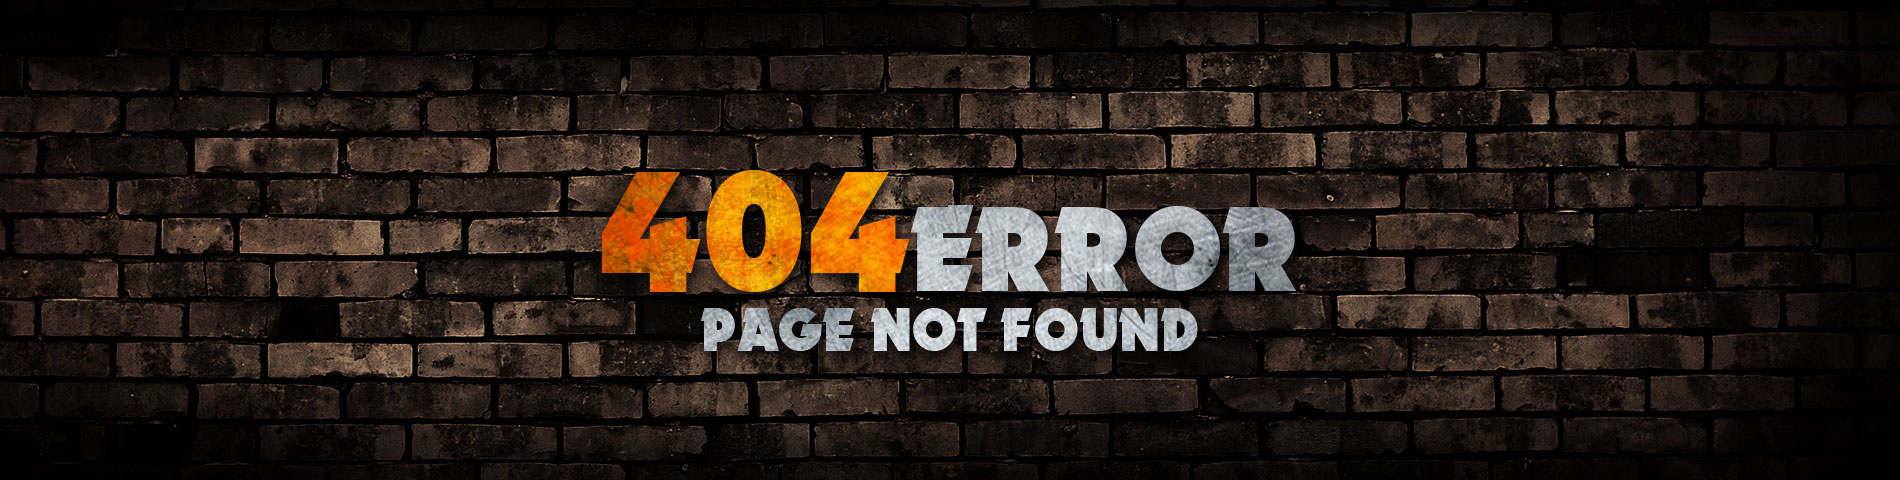 Error 404 - Page Not Found